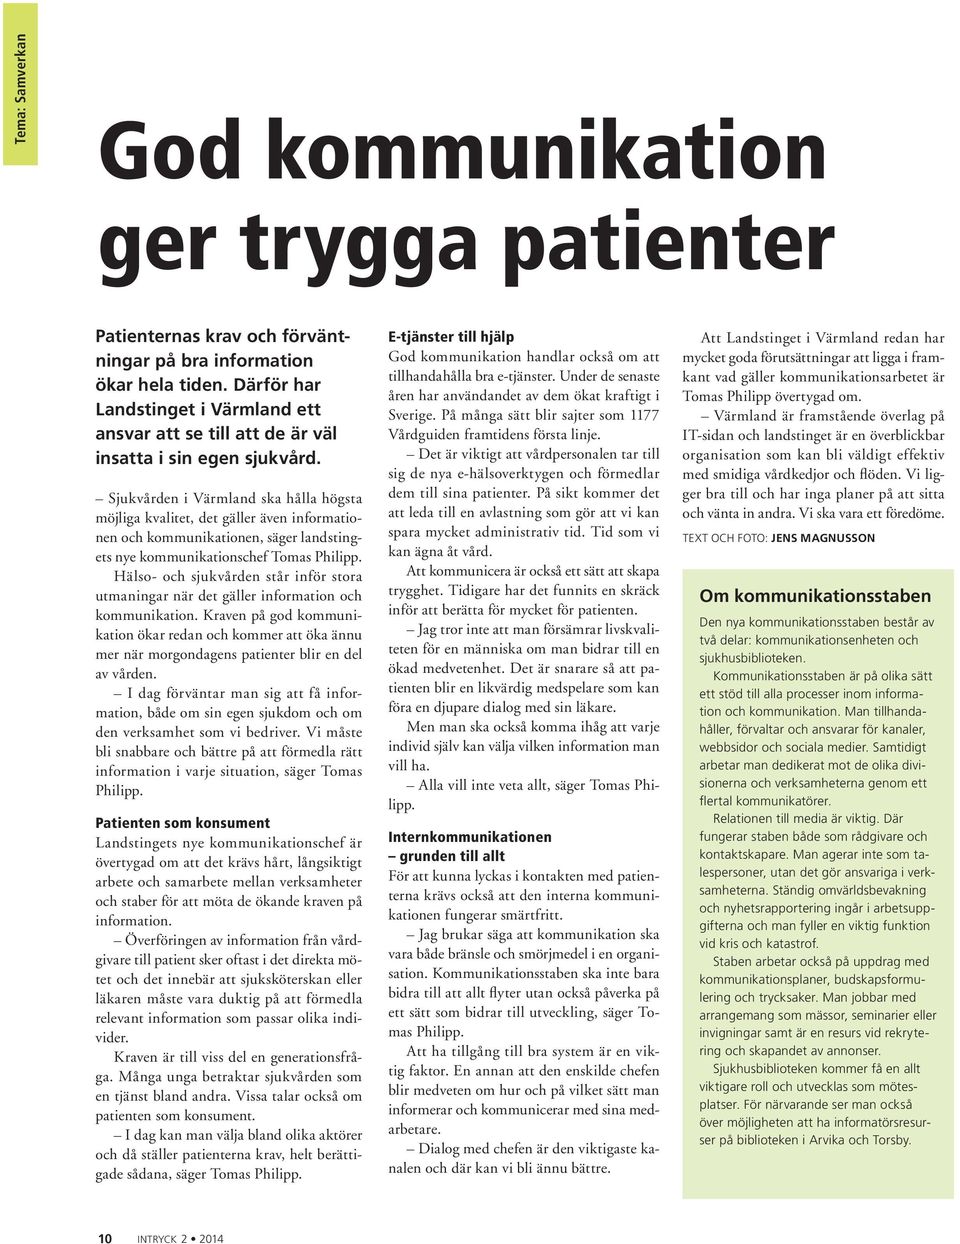 Sjukvården i Värmland ska hålla högsta möjliga kvalitet, det gäller även informationen och kommunikationen, säger landstingets nye kommunikationschef Tomas Philipp.